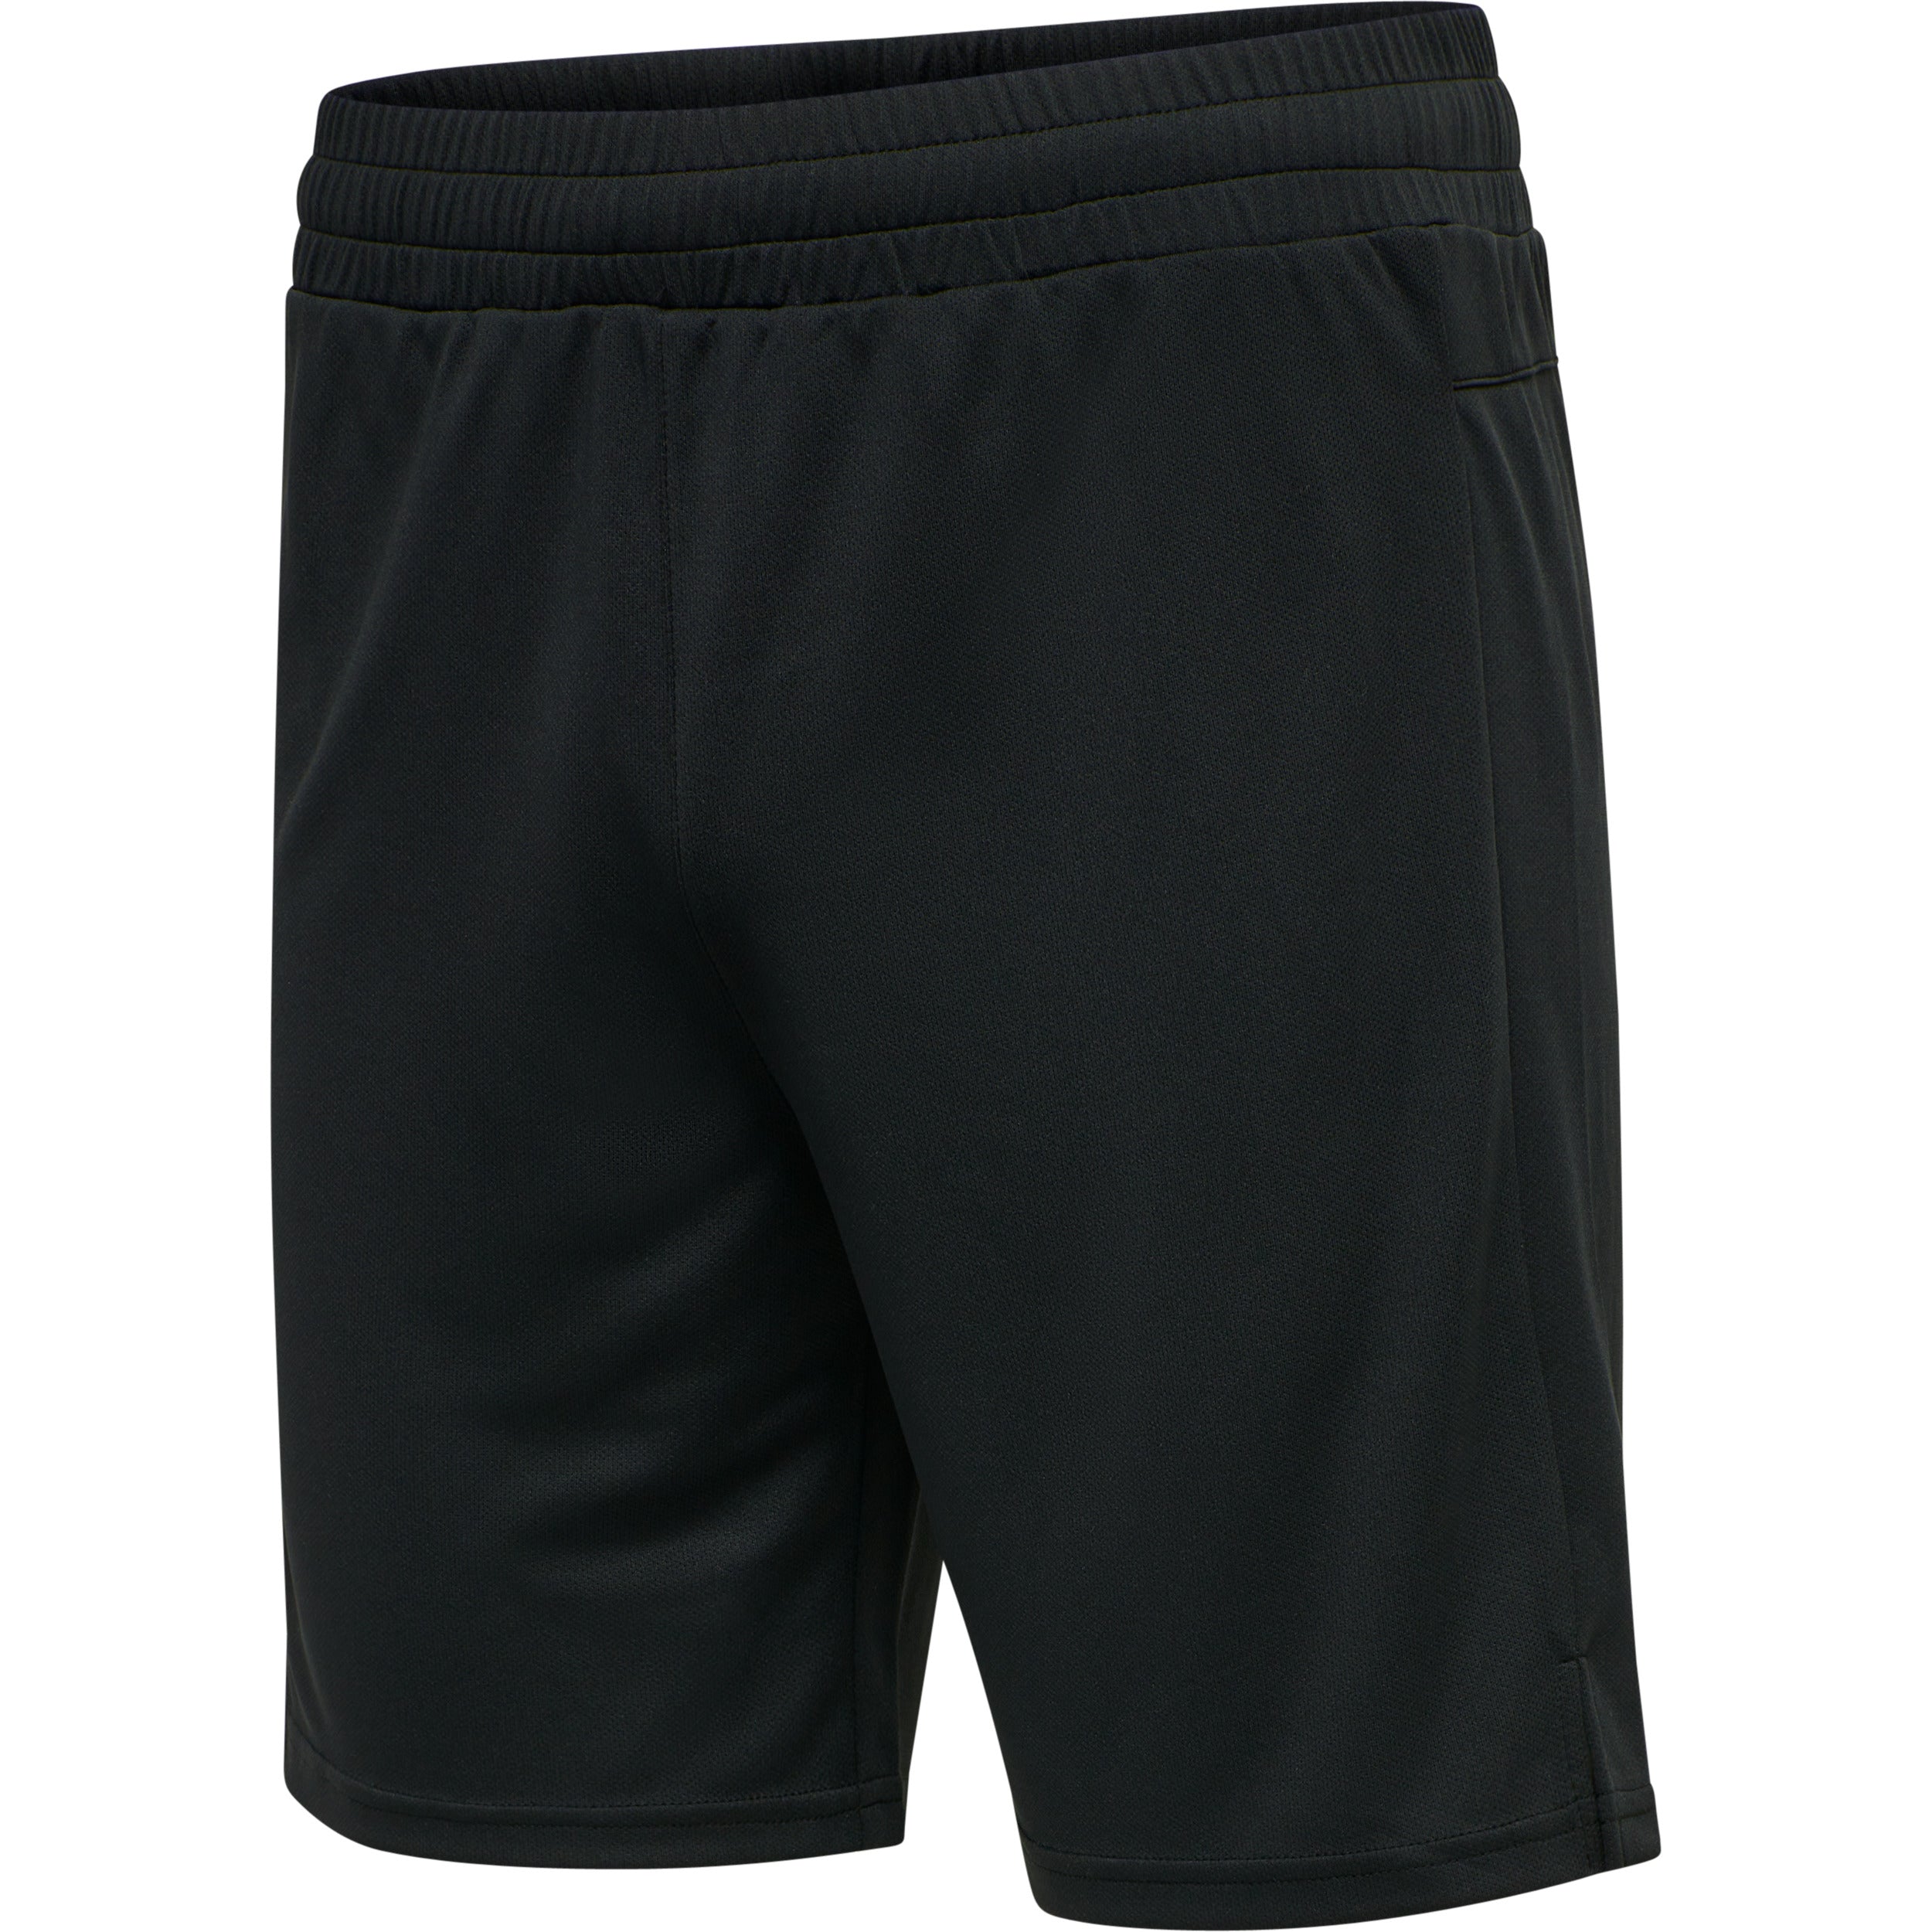 Brug Hummel Topaz Shorts  -  Black til en forbedret oplevelse